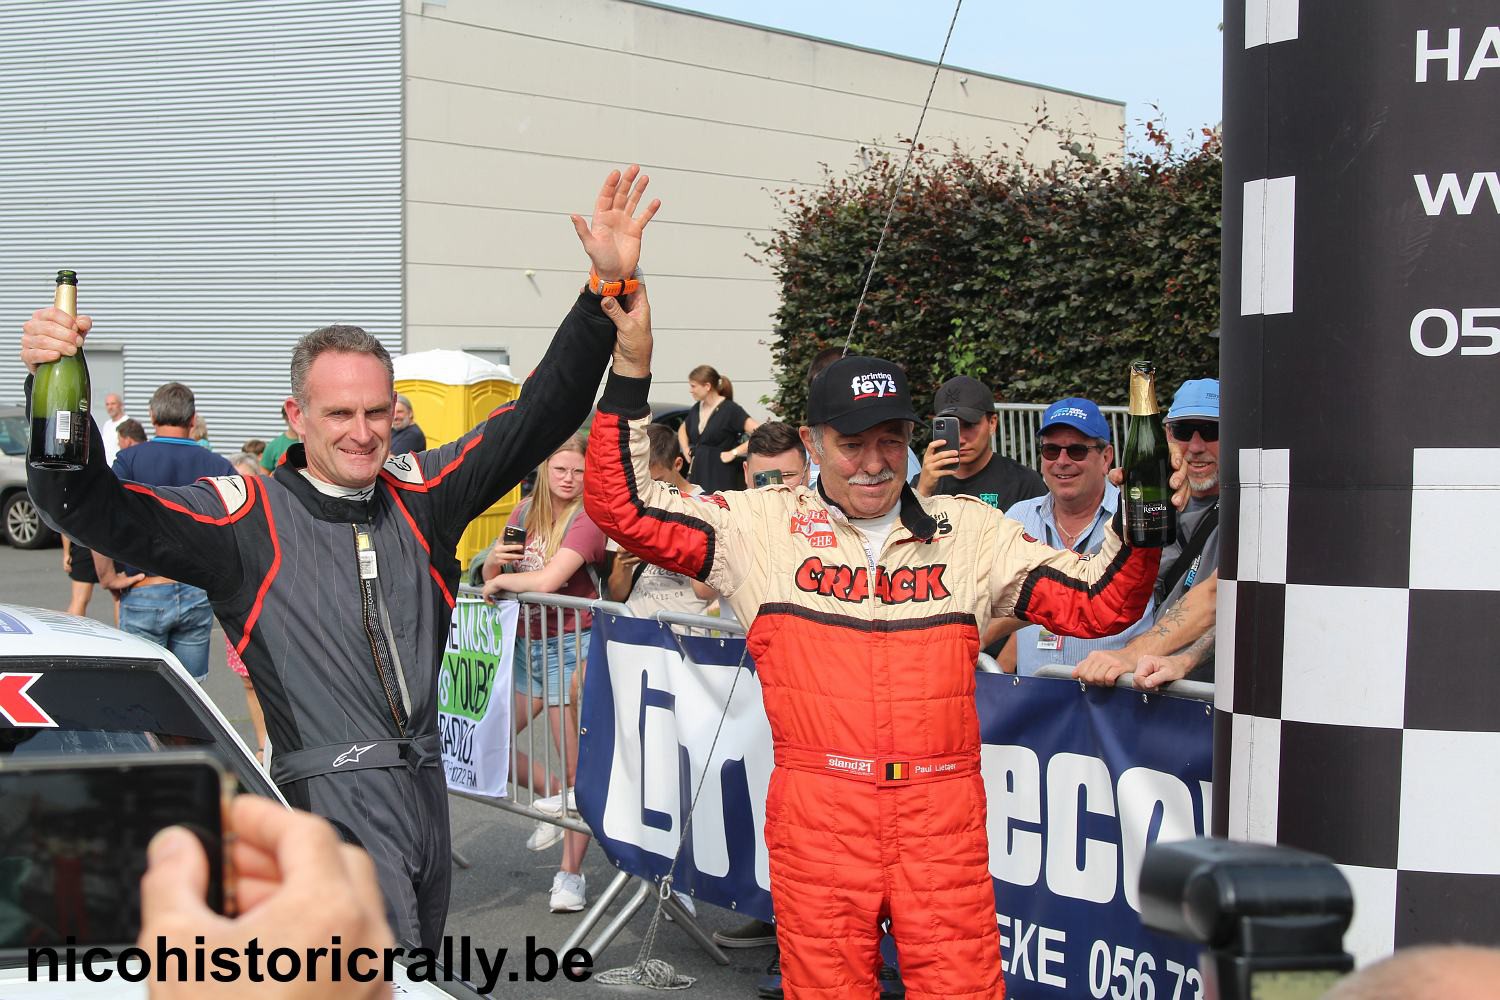 Verslag TBR Short Rally: Paul Lietaer outstanding en wint voor de 13de keer !